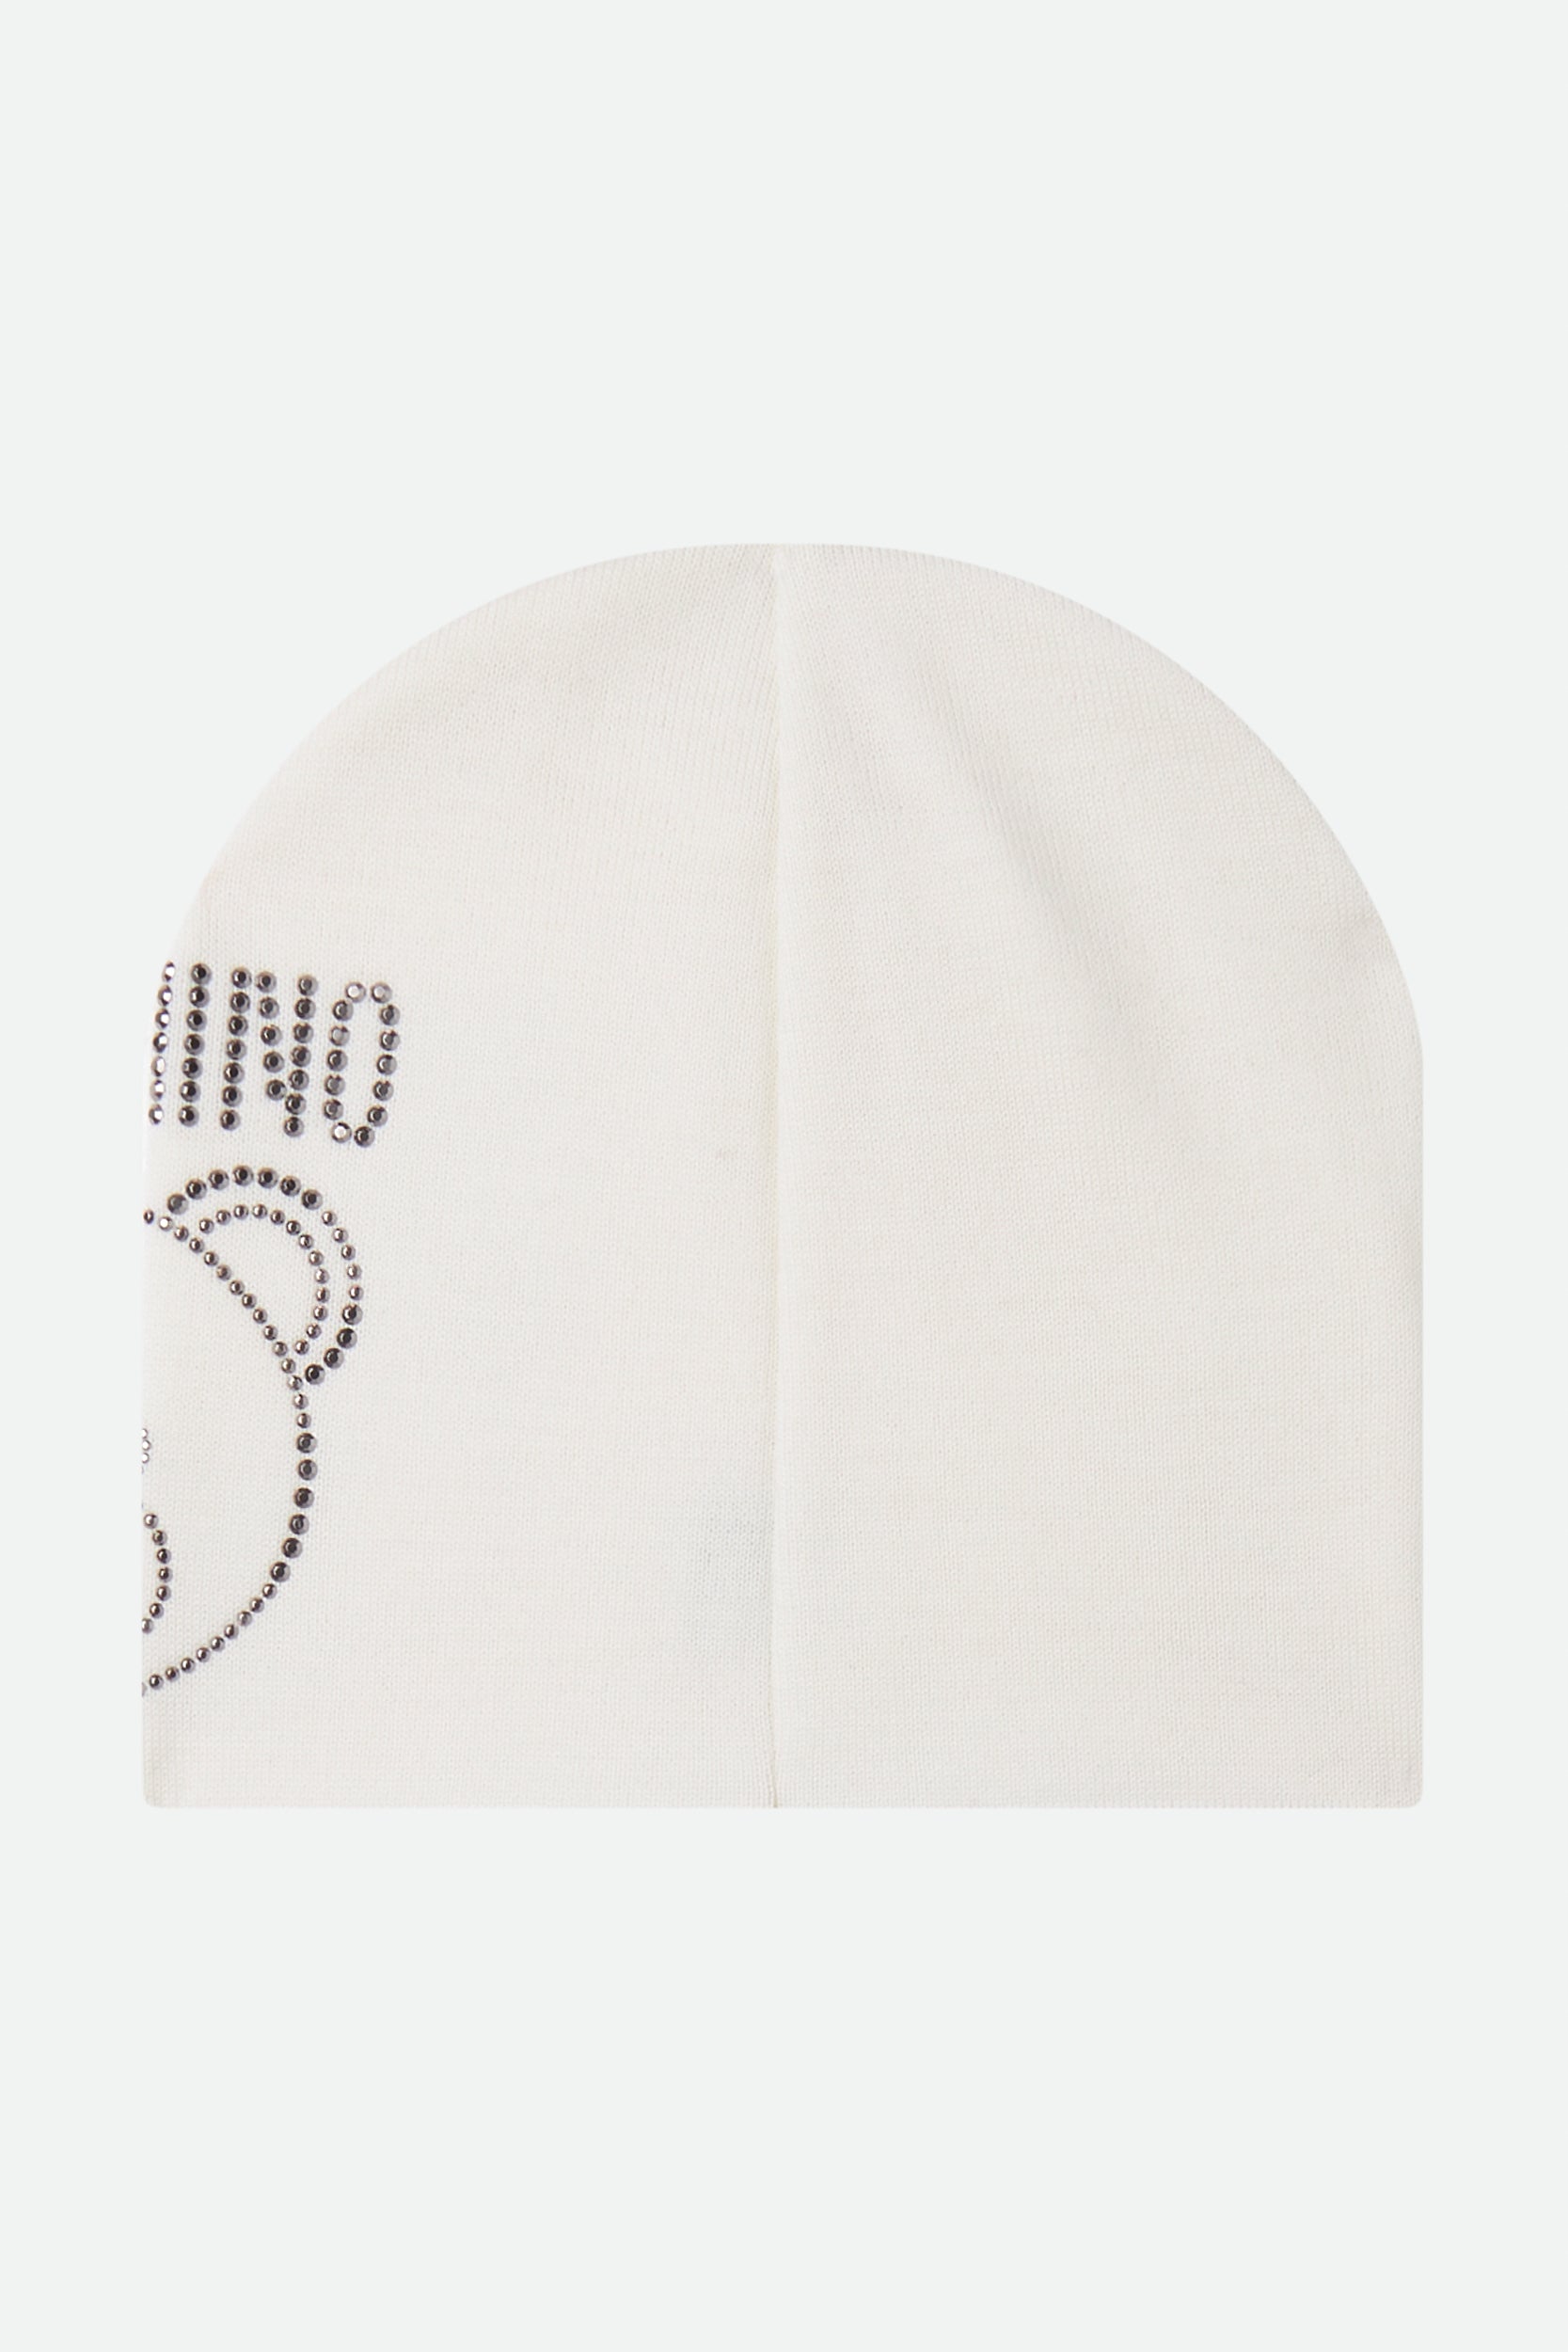 Moschino White Hat